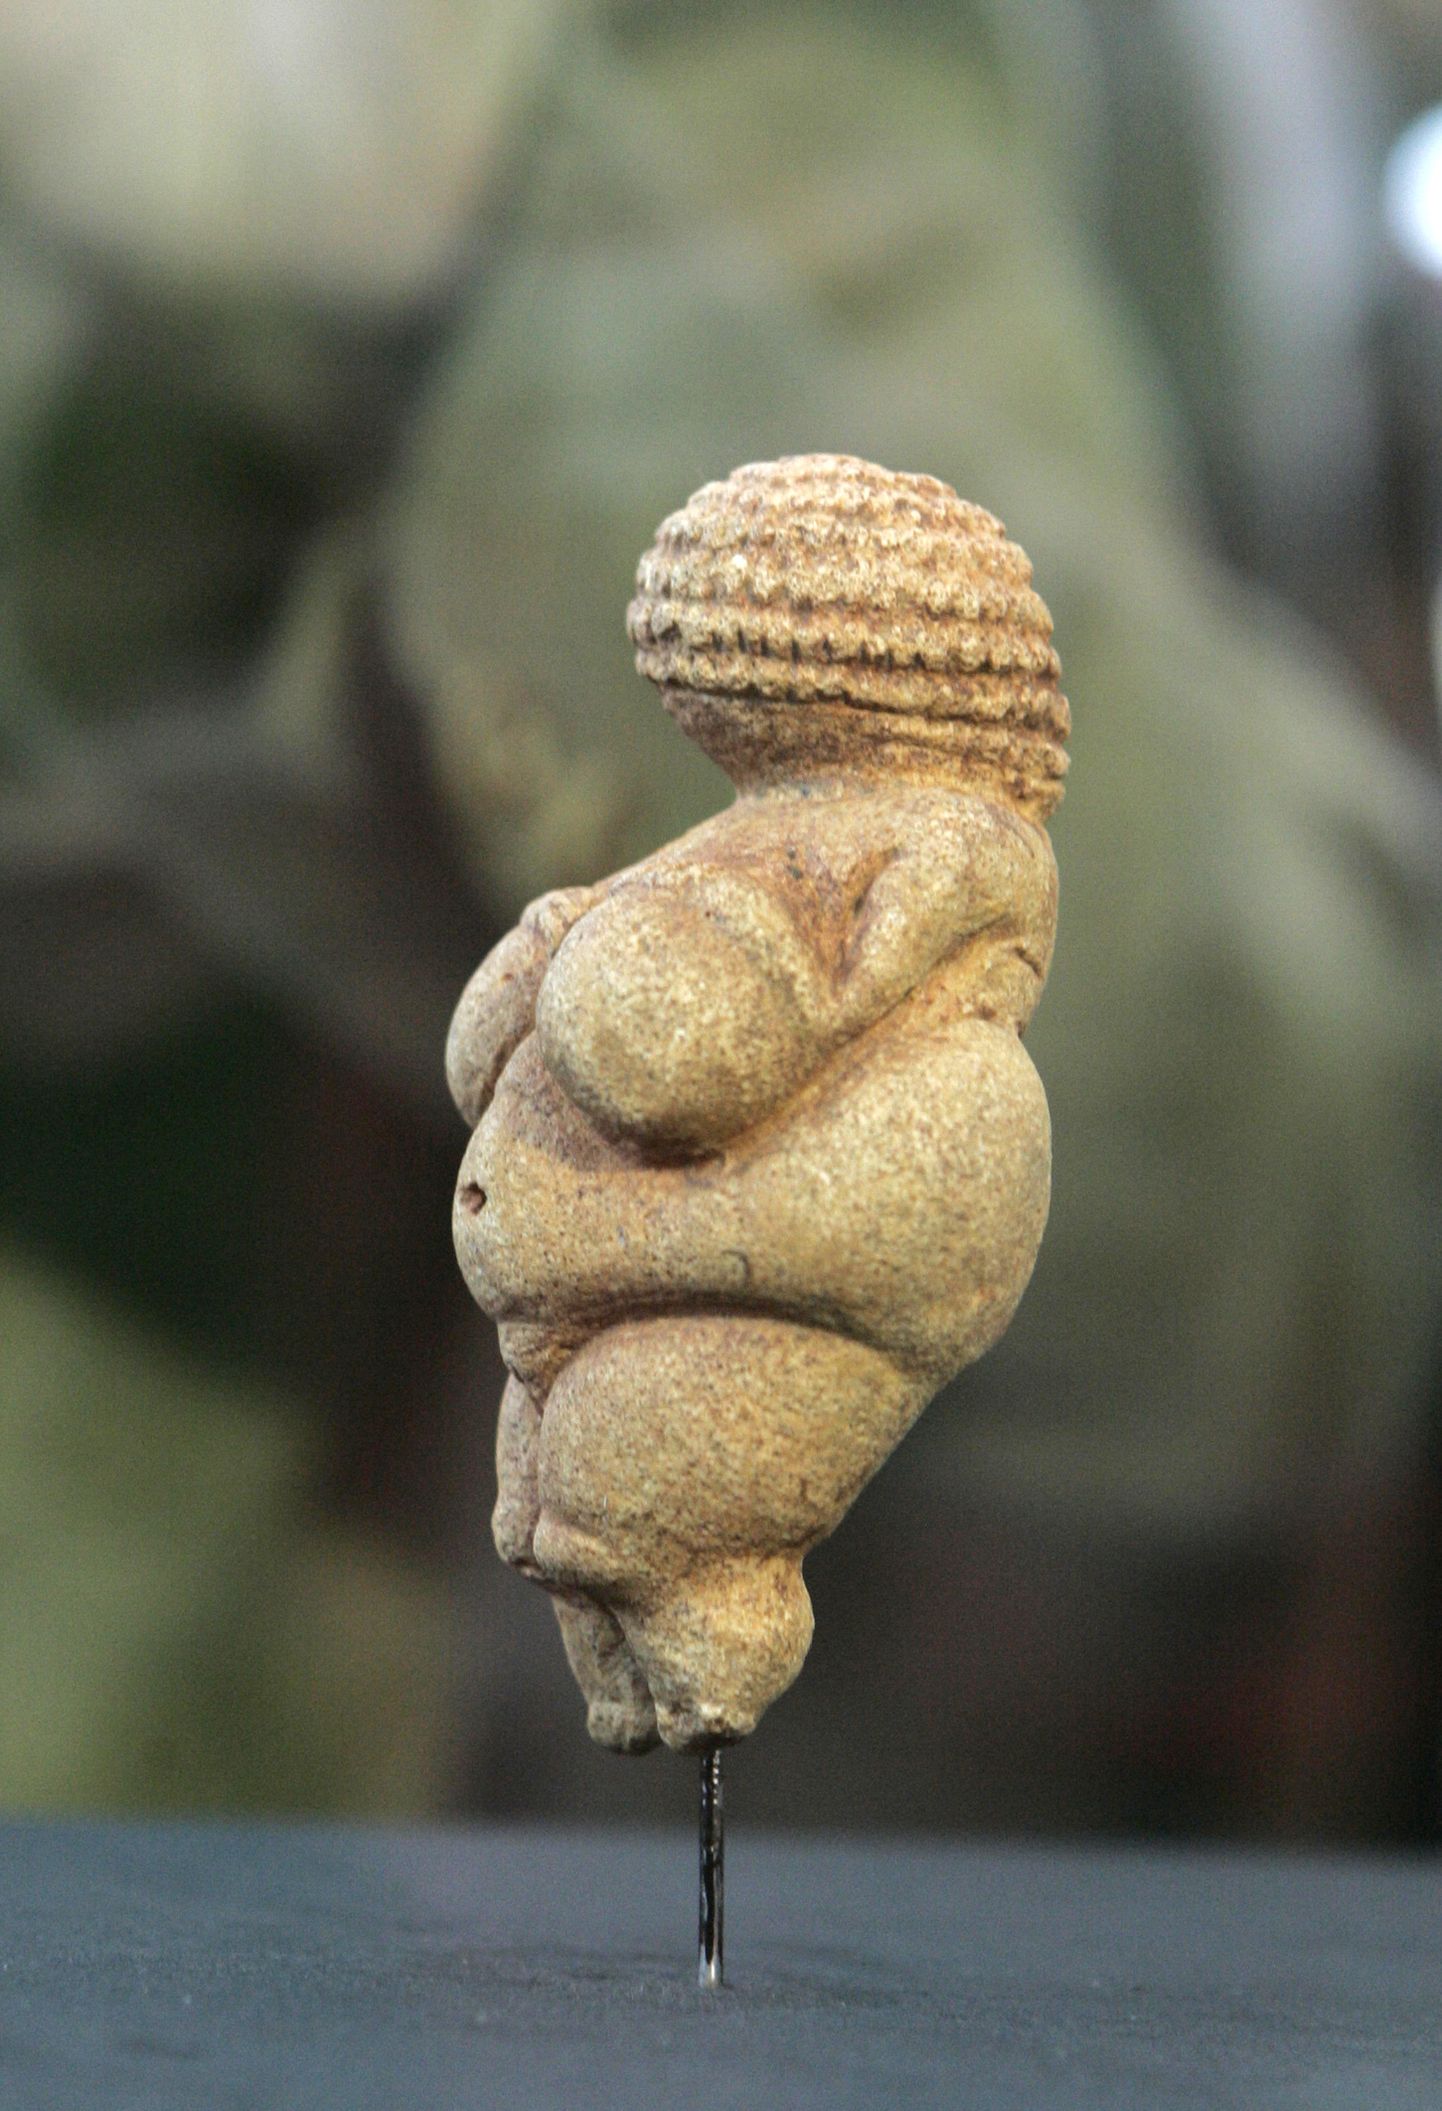 Willendorfi Veenus, mis on paleoliitikumist ehk vanemast kiviajast pärit naisekuju